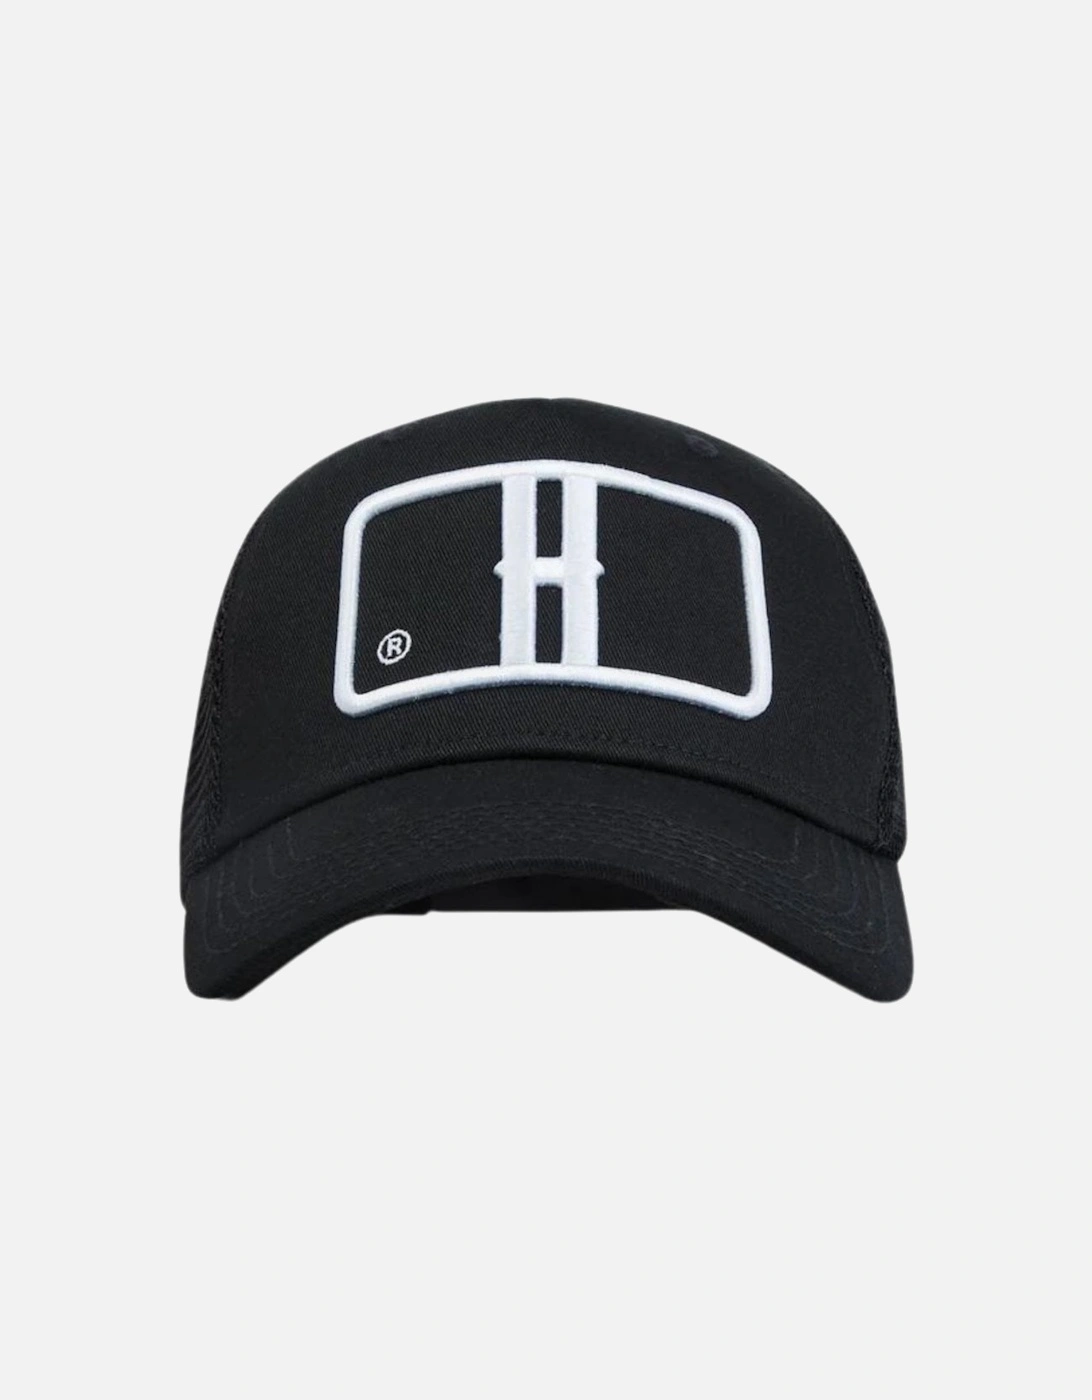 OG Heritage Trucker Cap - Black/White, 9 of 8